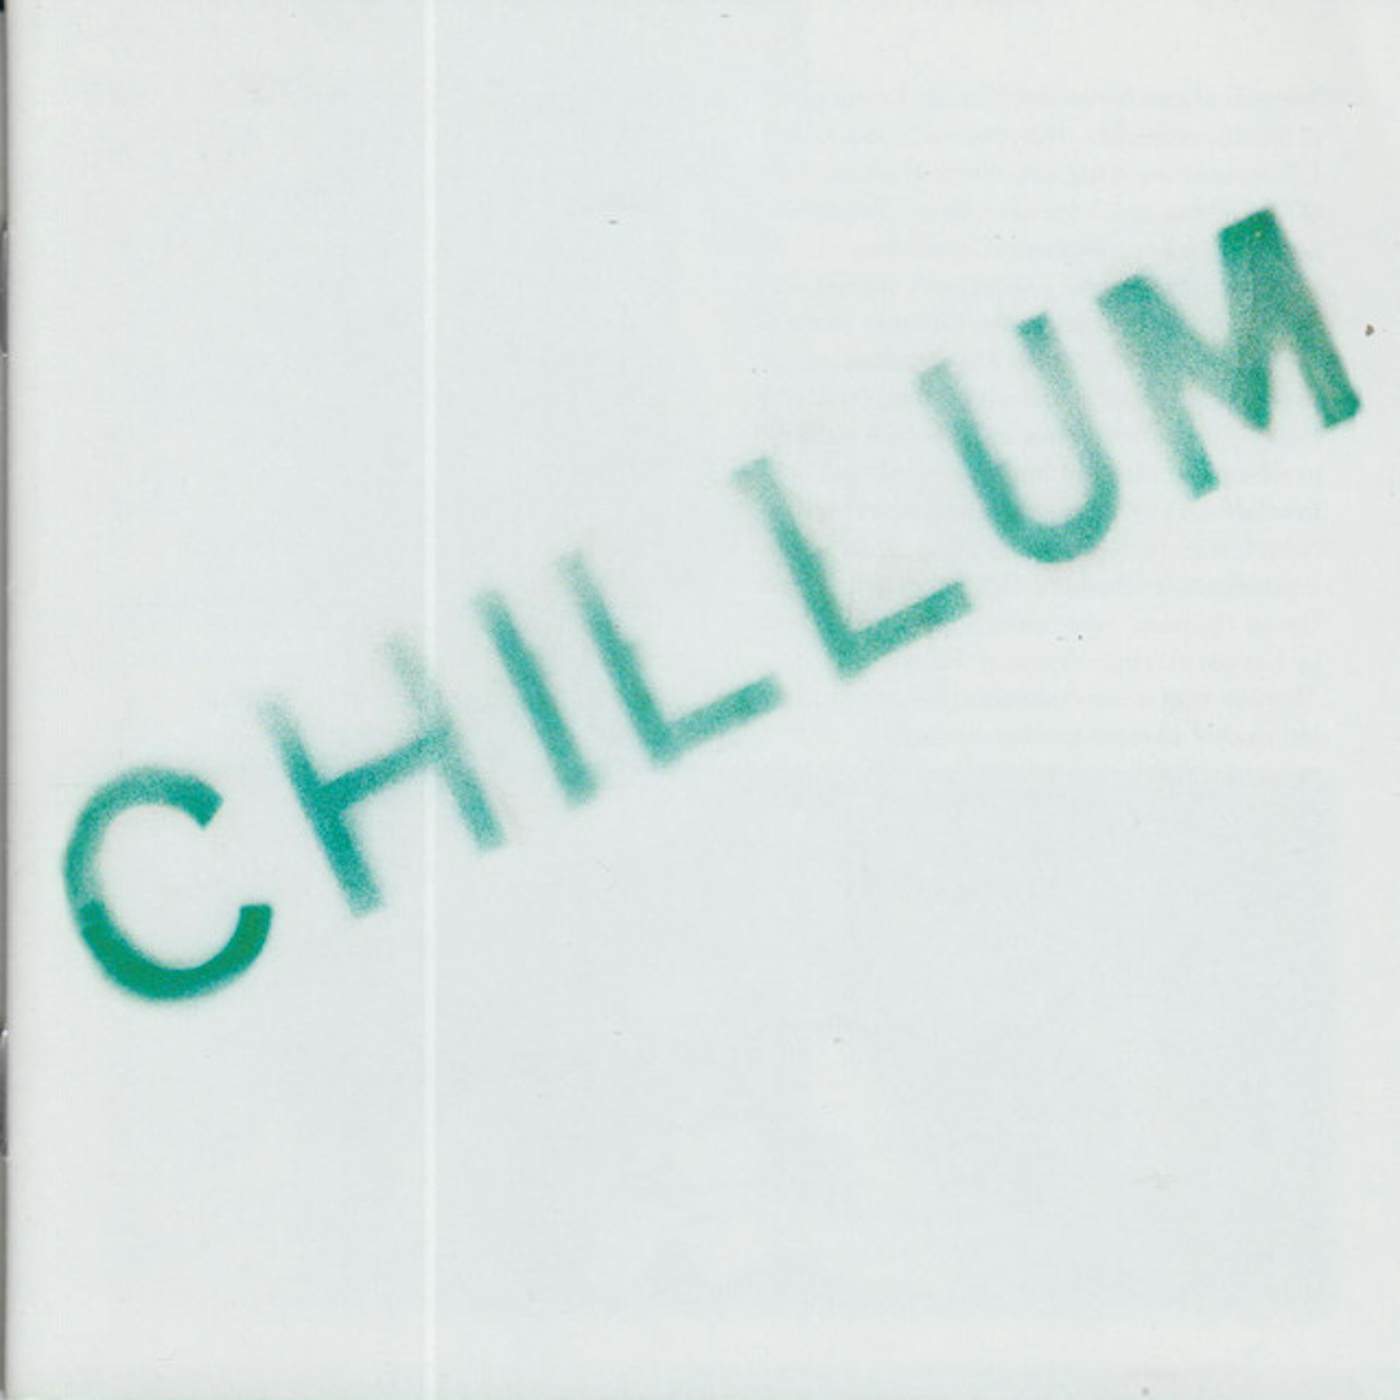 Chillum Vinyl Record